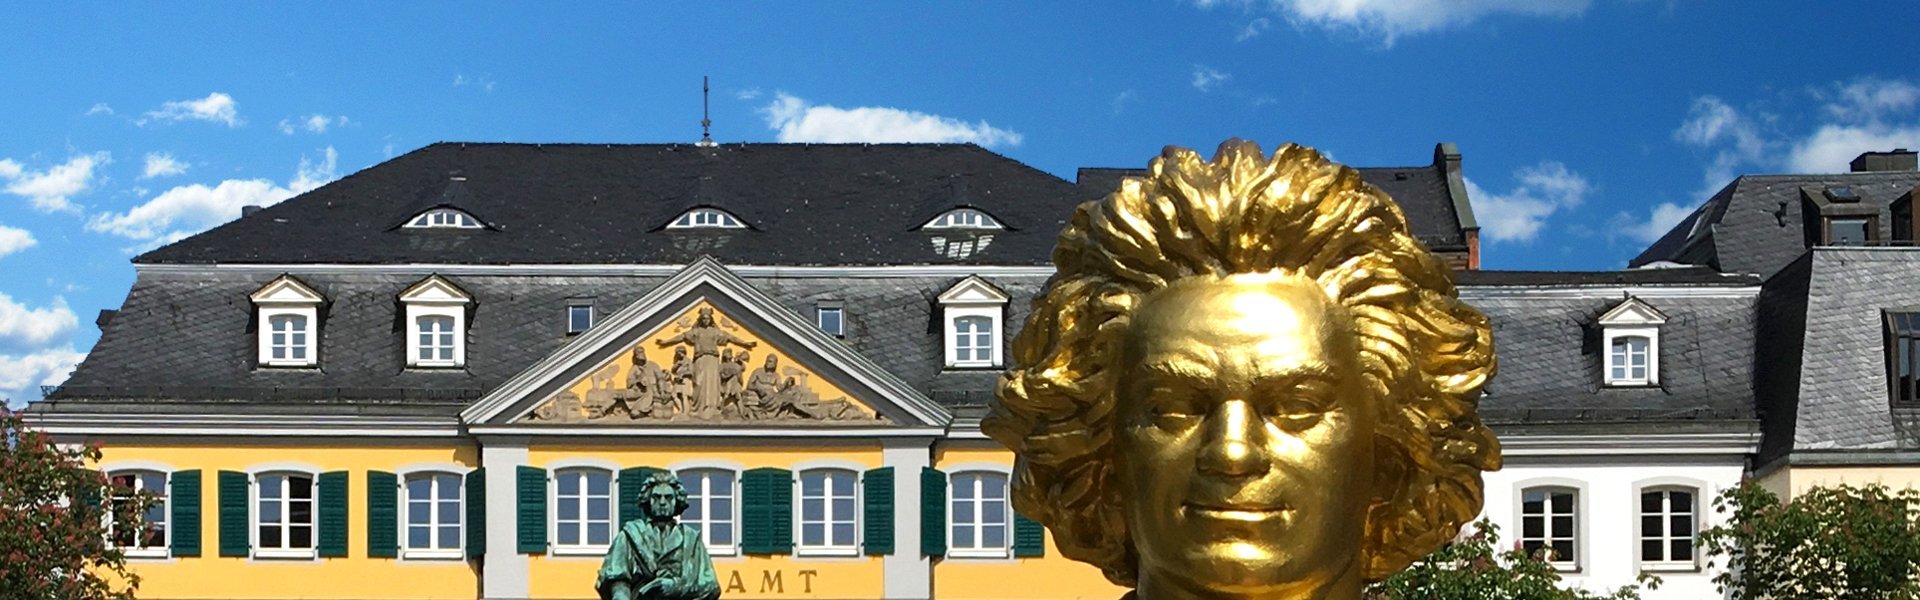 Beethoven in Bonn, Duitsland